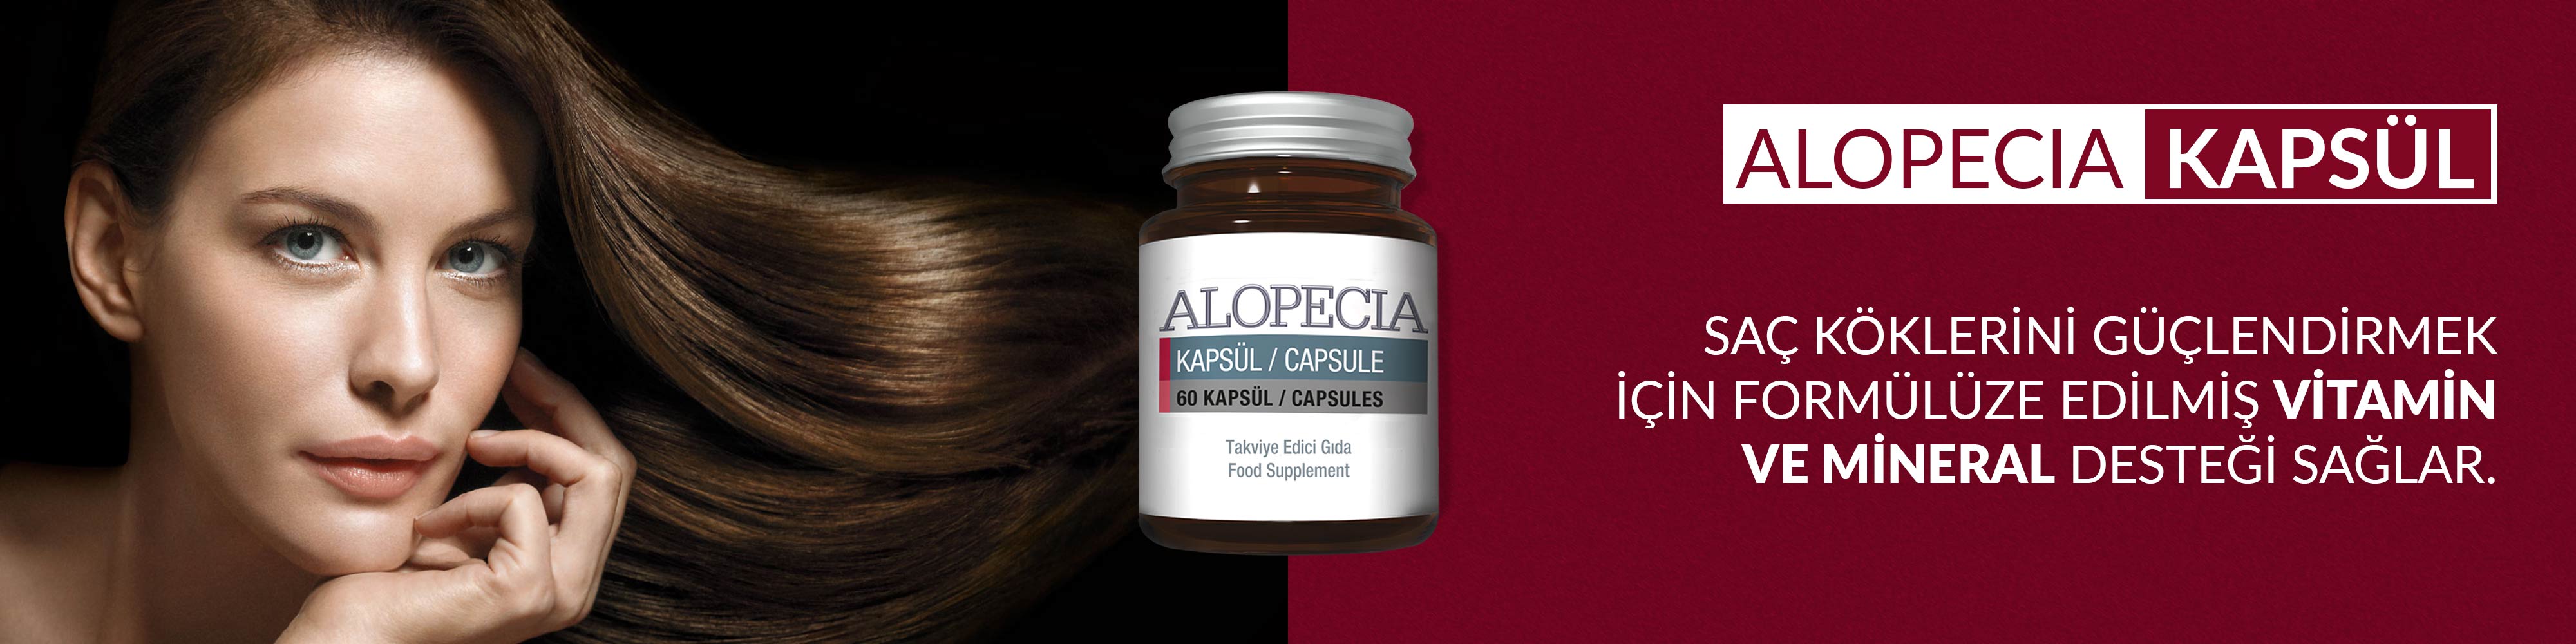 Alopecia 60 Kapsül